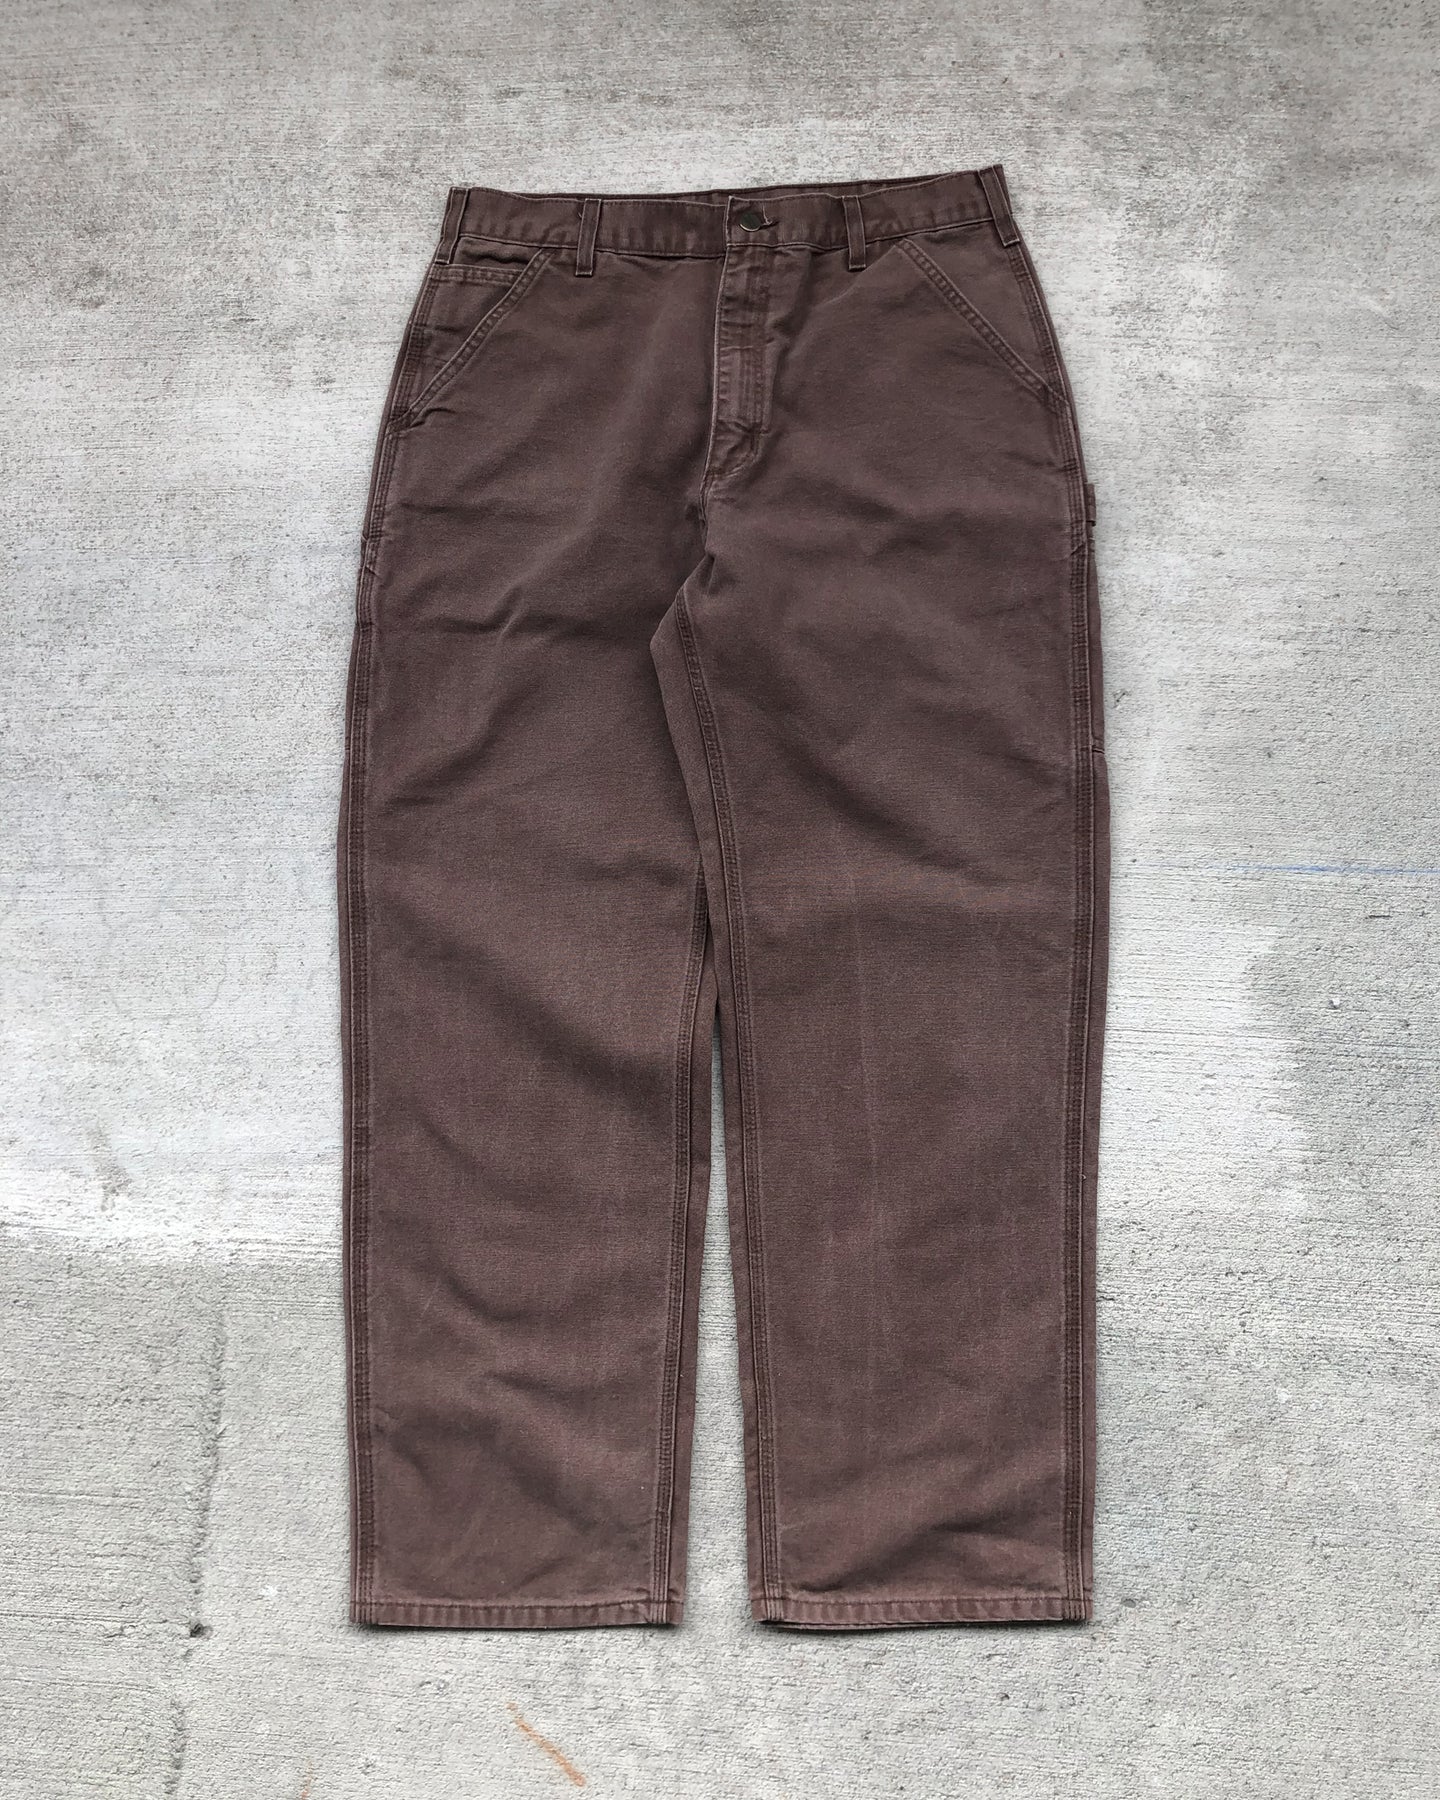 1990s Carhartt Mud Brown Carpener Pants - Size 34 x 31